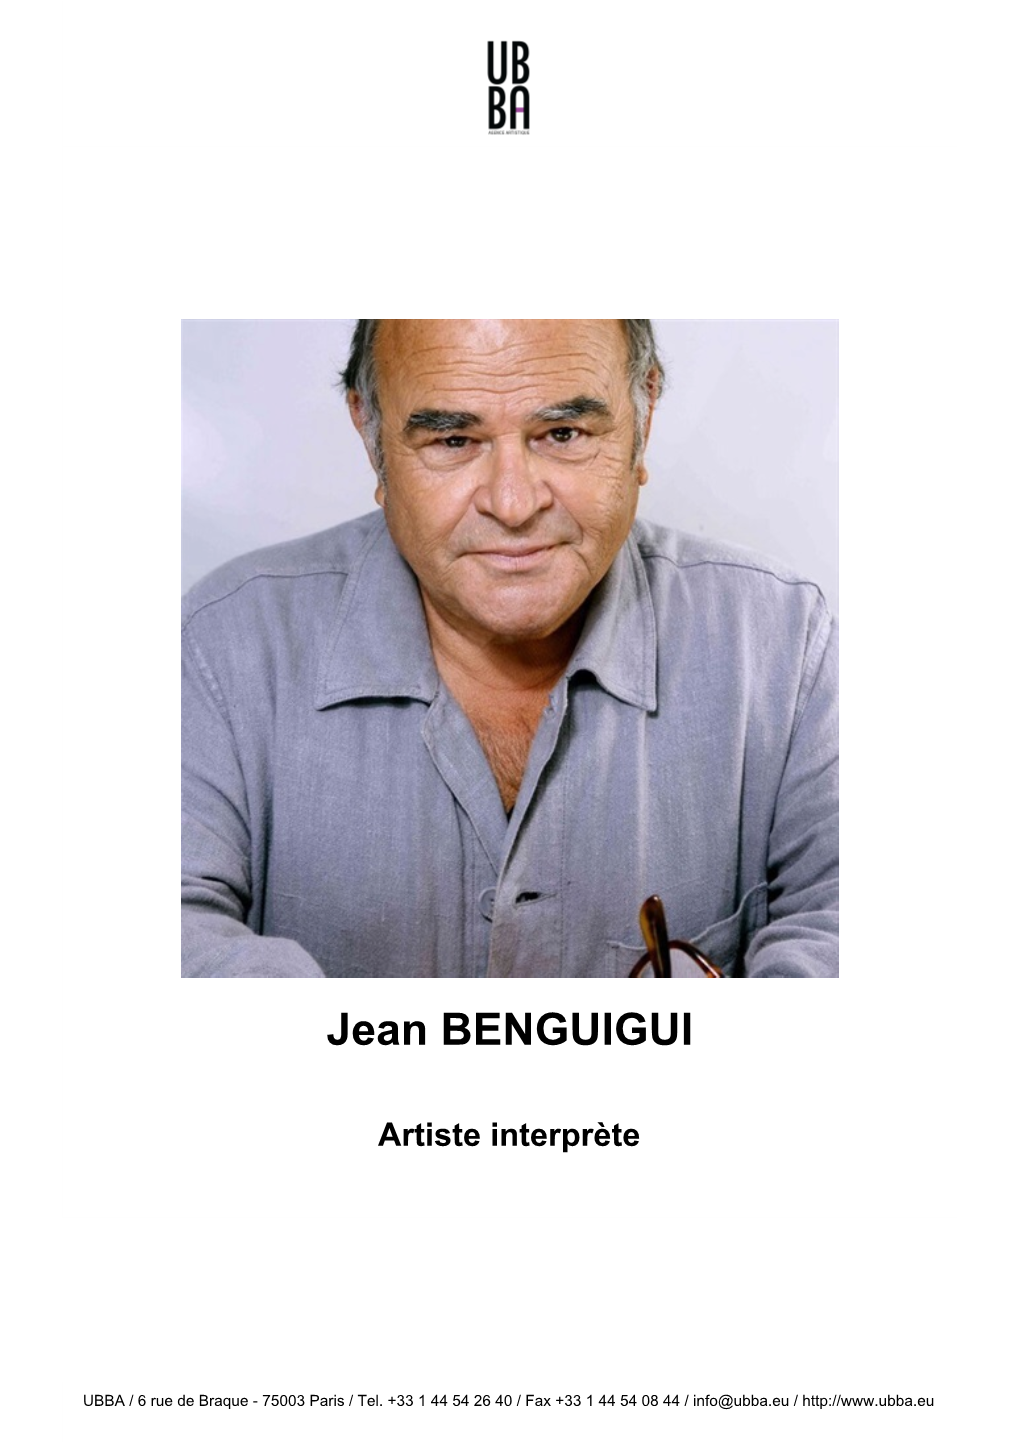 Jean BENGUIGUI